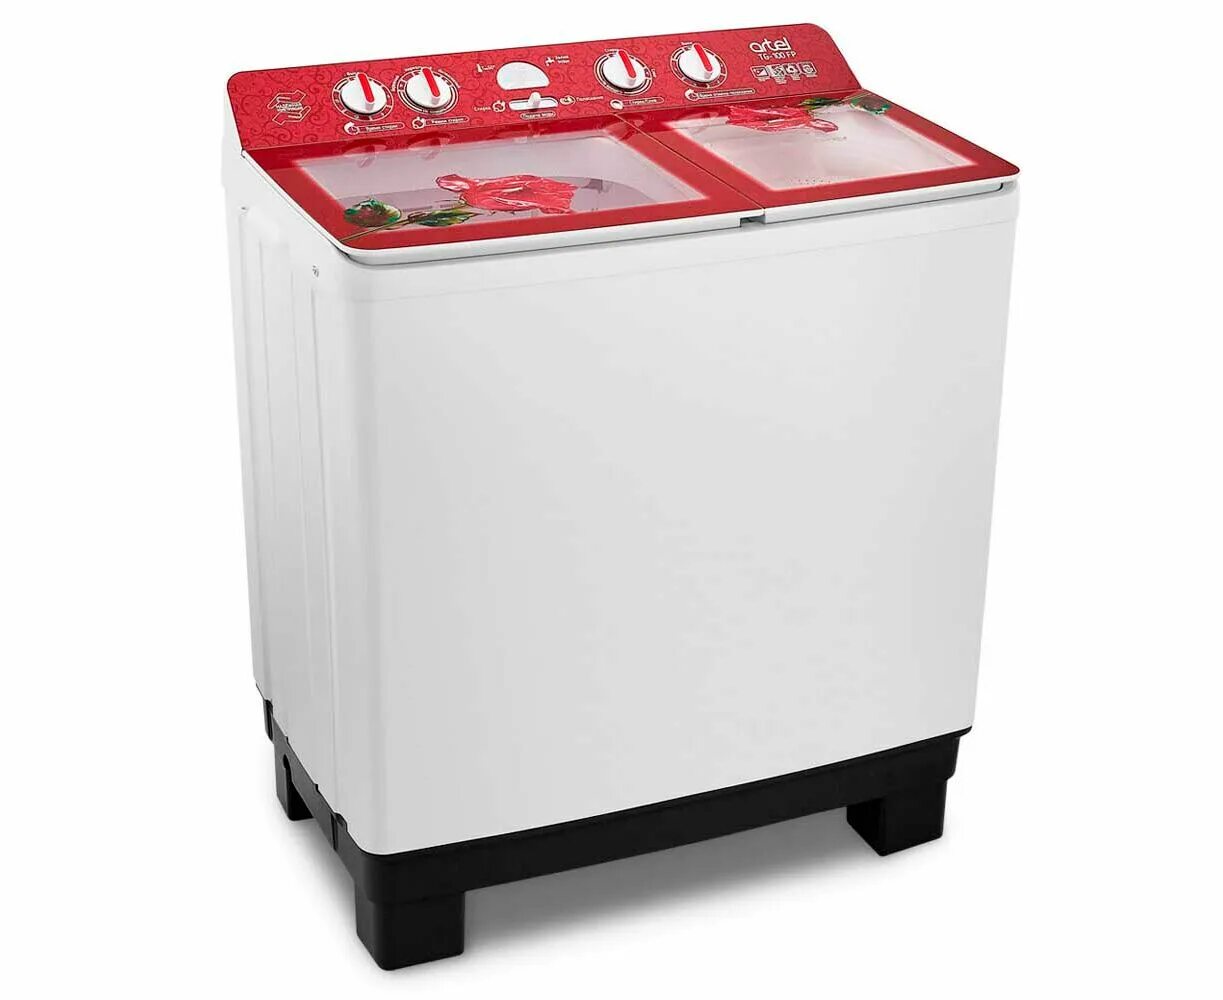 Стиральная машина Artel tg100. Полуавтомат стиральная машина Артел. Стиральная машина TG 100 FP. Artel-TG 100 F P (красный) (10кг). Артель машина